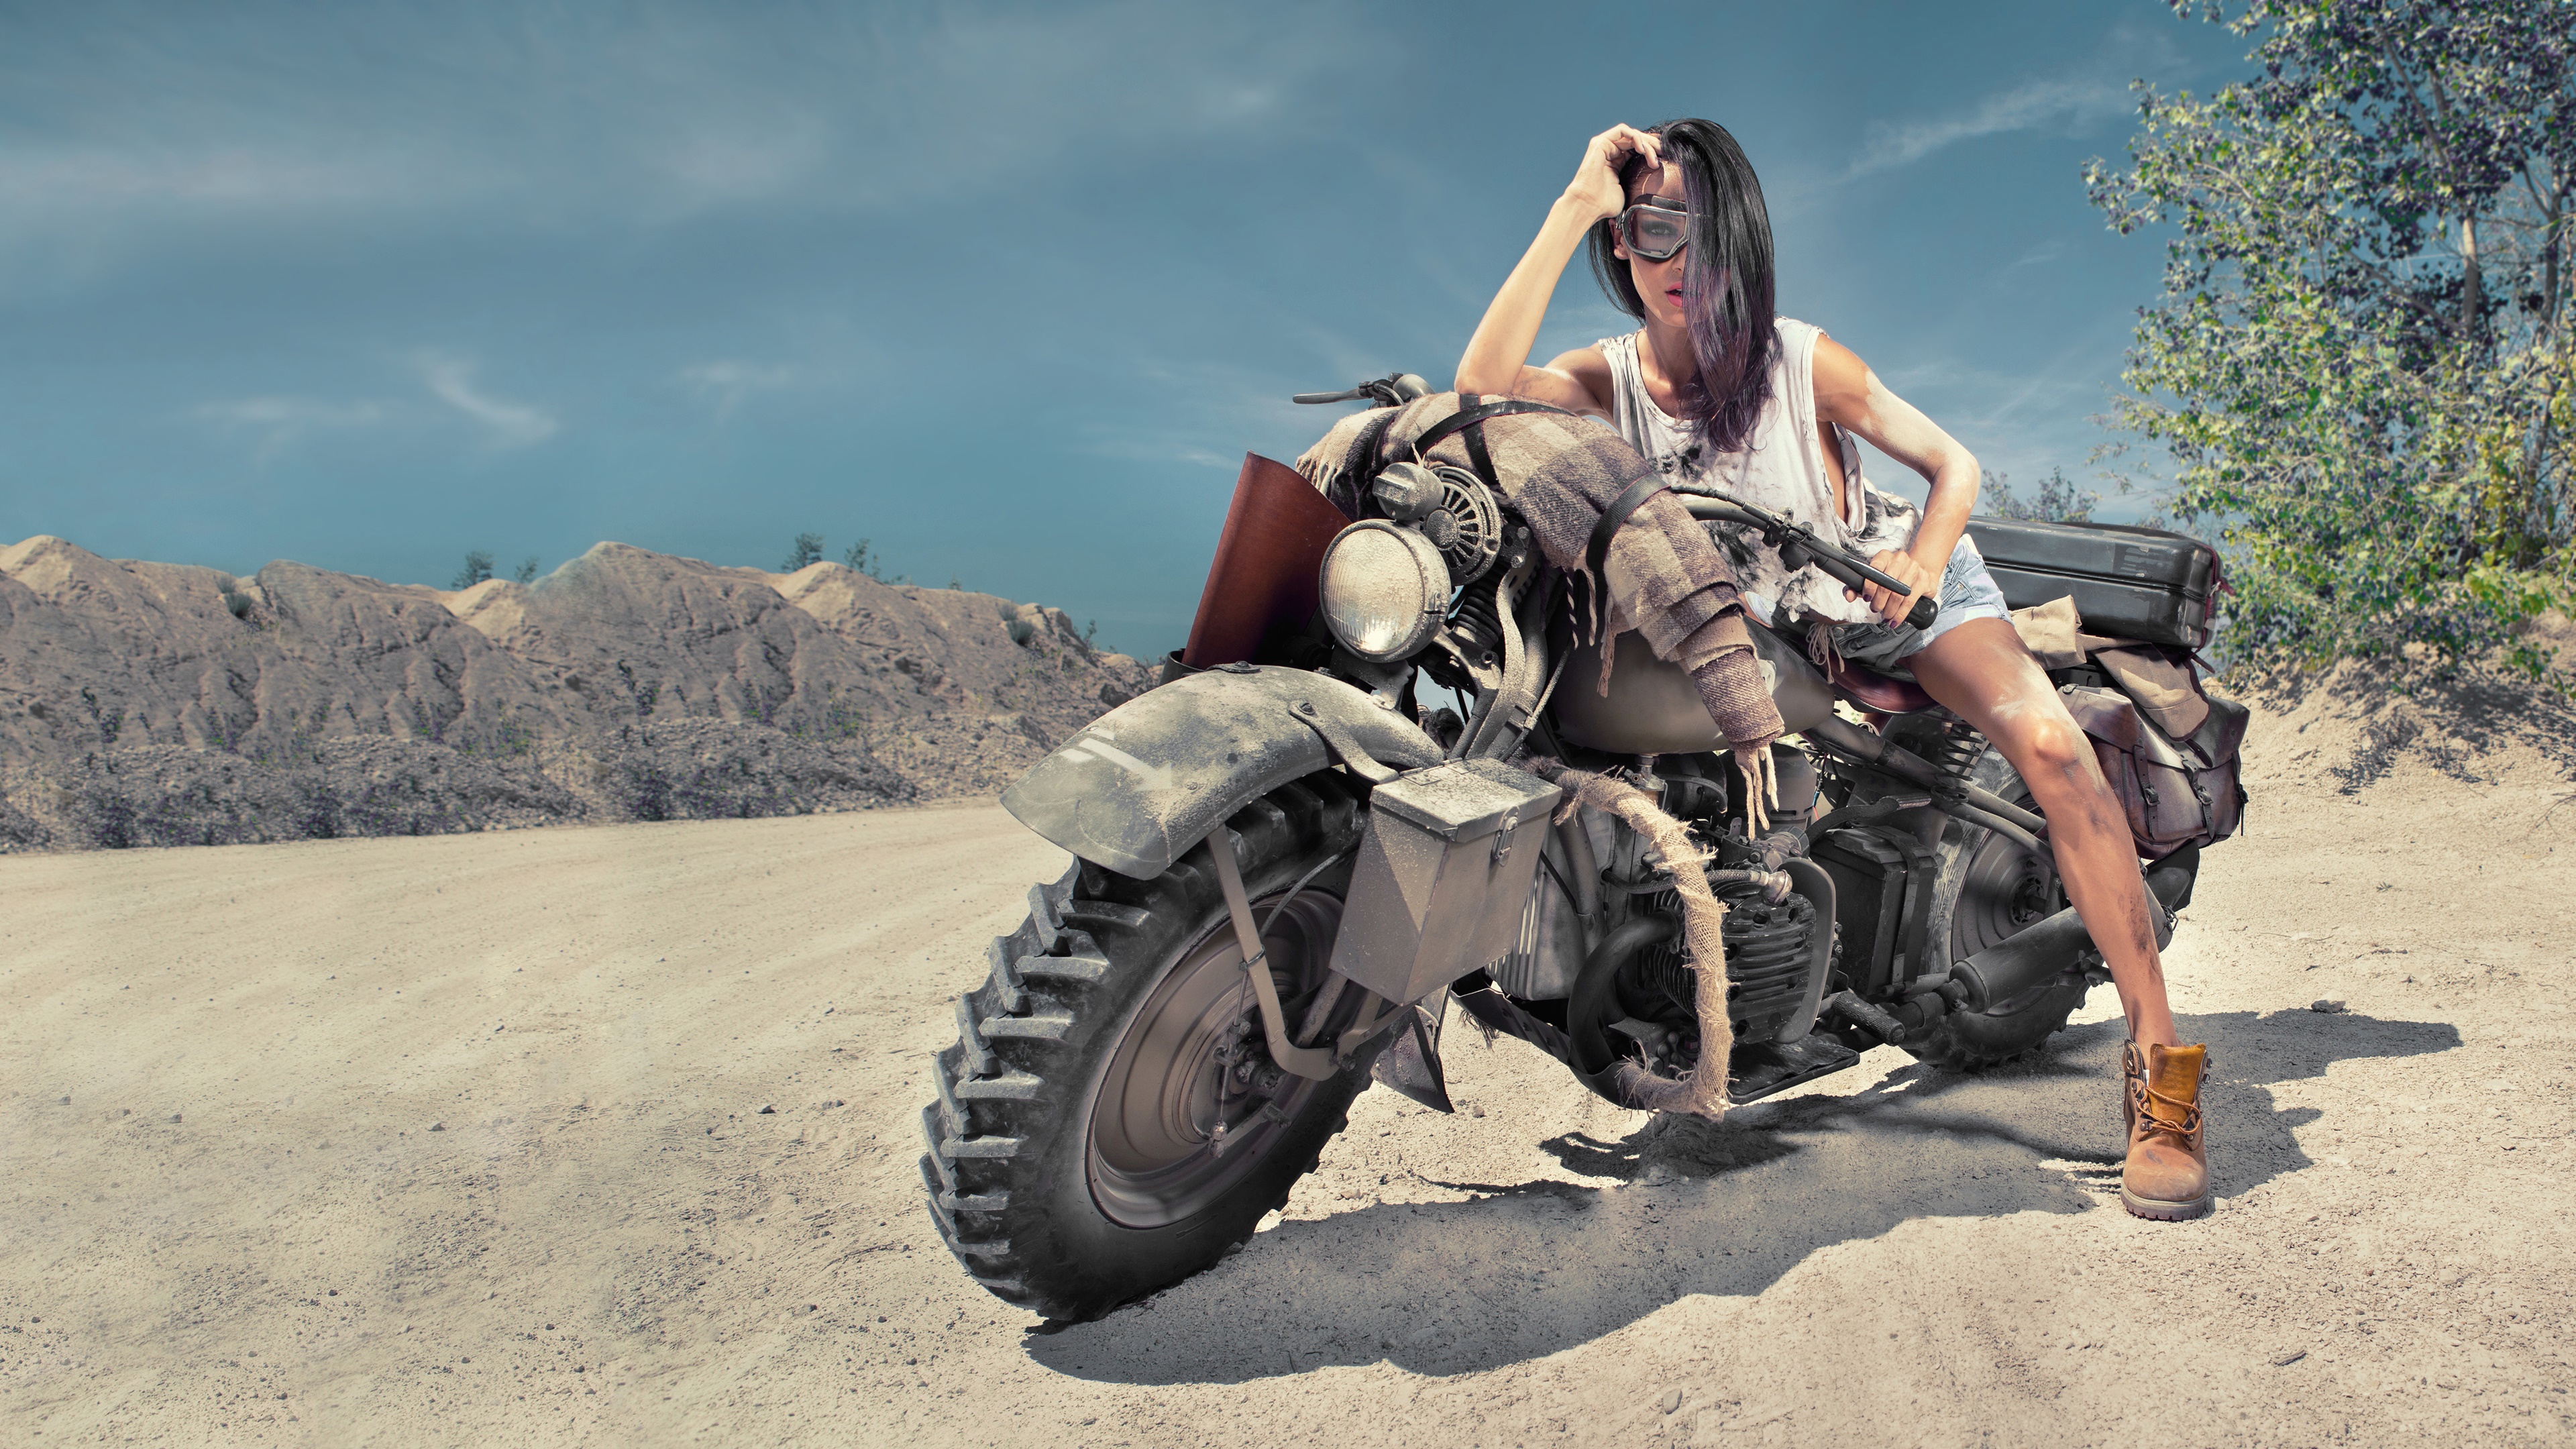 女孩在沙漠中摆出复古摩托车的姿势